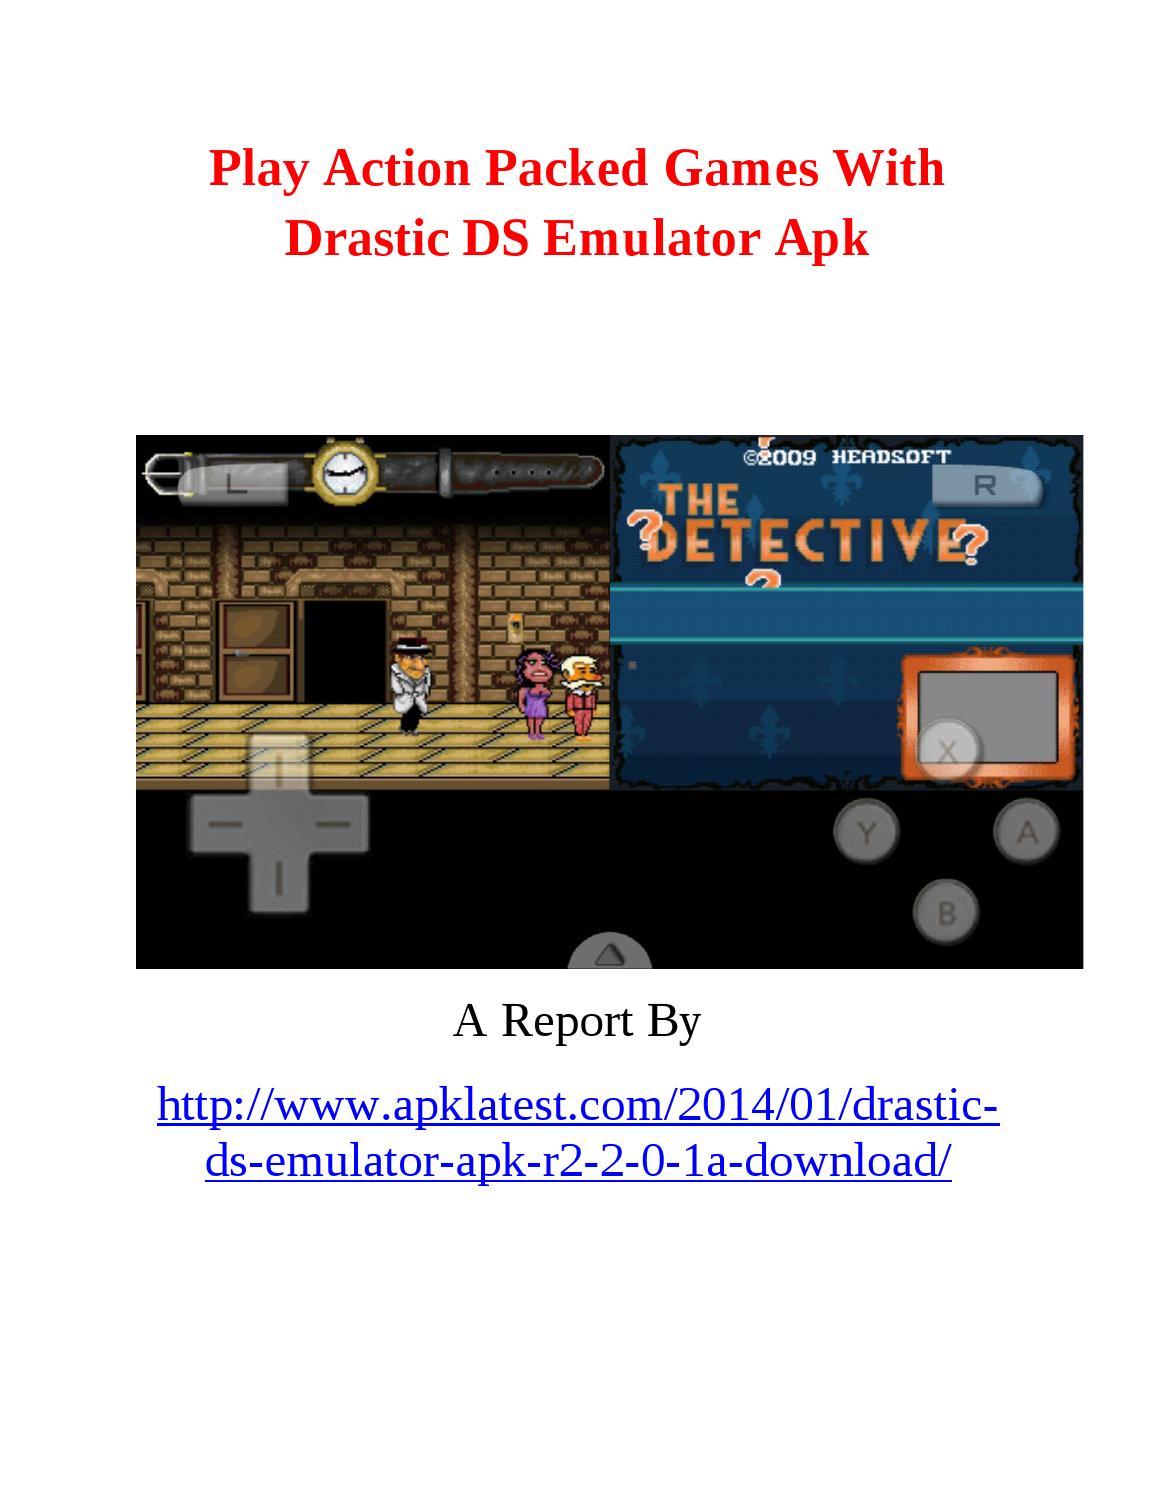 Drastic Nds Emulator Download